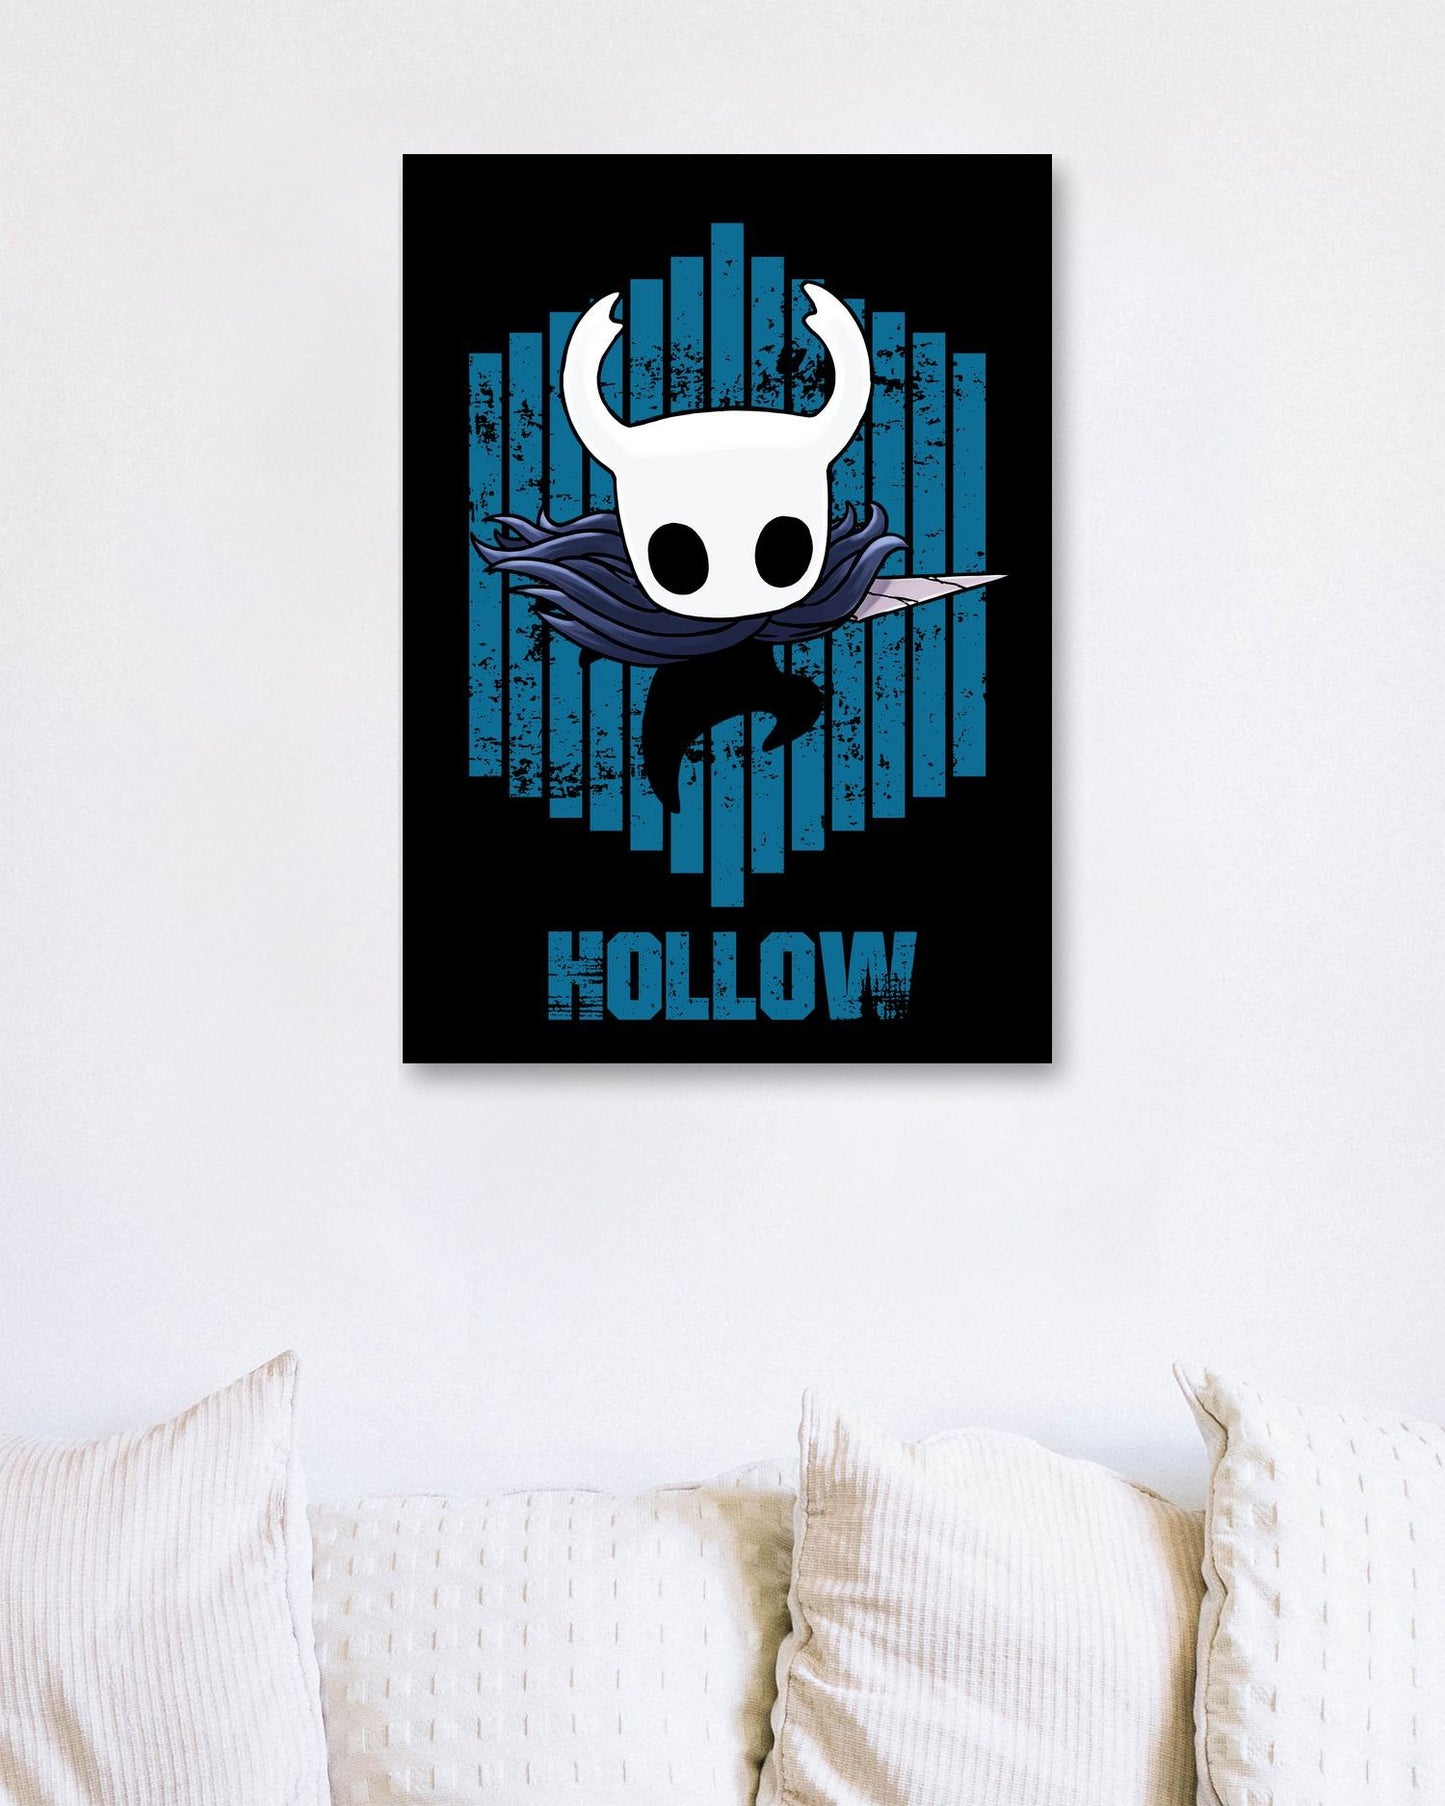 Hollow - @FreakCreator